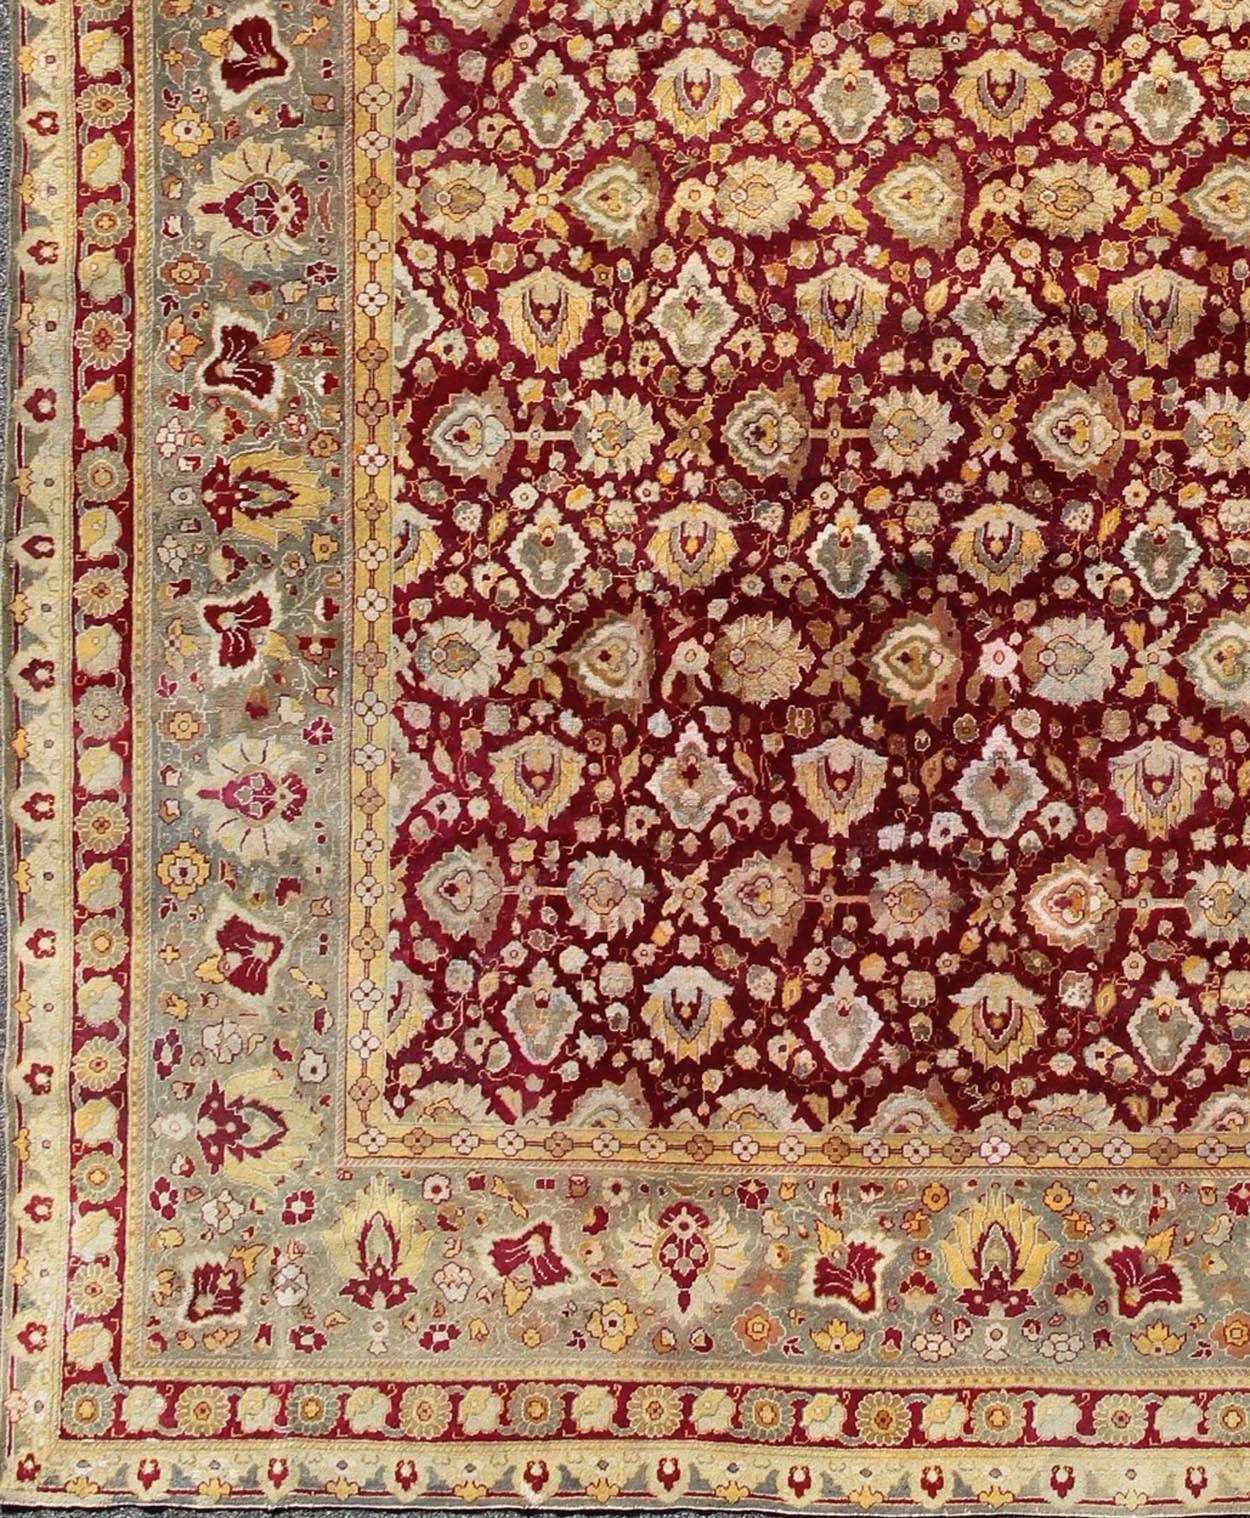 Elegant tapis indien ancien du 19e siècle d'Agra à fond rouge marron et bordure vert gris. Tapis Keivan Woven Arts / 13-1105, antiquité indienne d'Agra. Amritsar antique. Tapis indiens anciens. Tapis moghol ancien.

Mesures :   11'8 x 14'3.

Cette